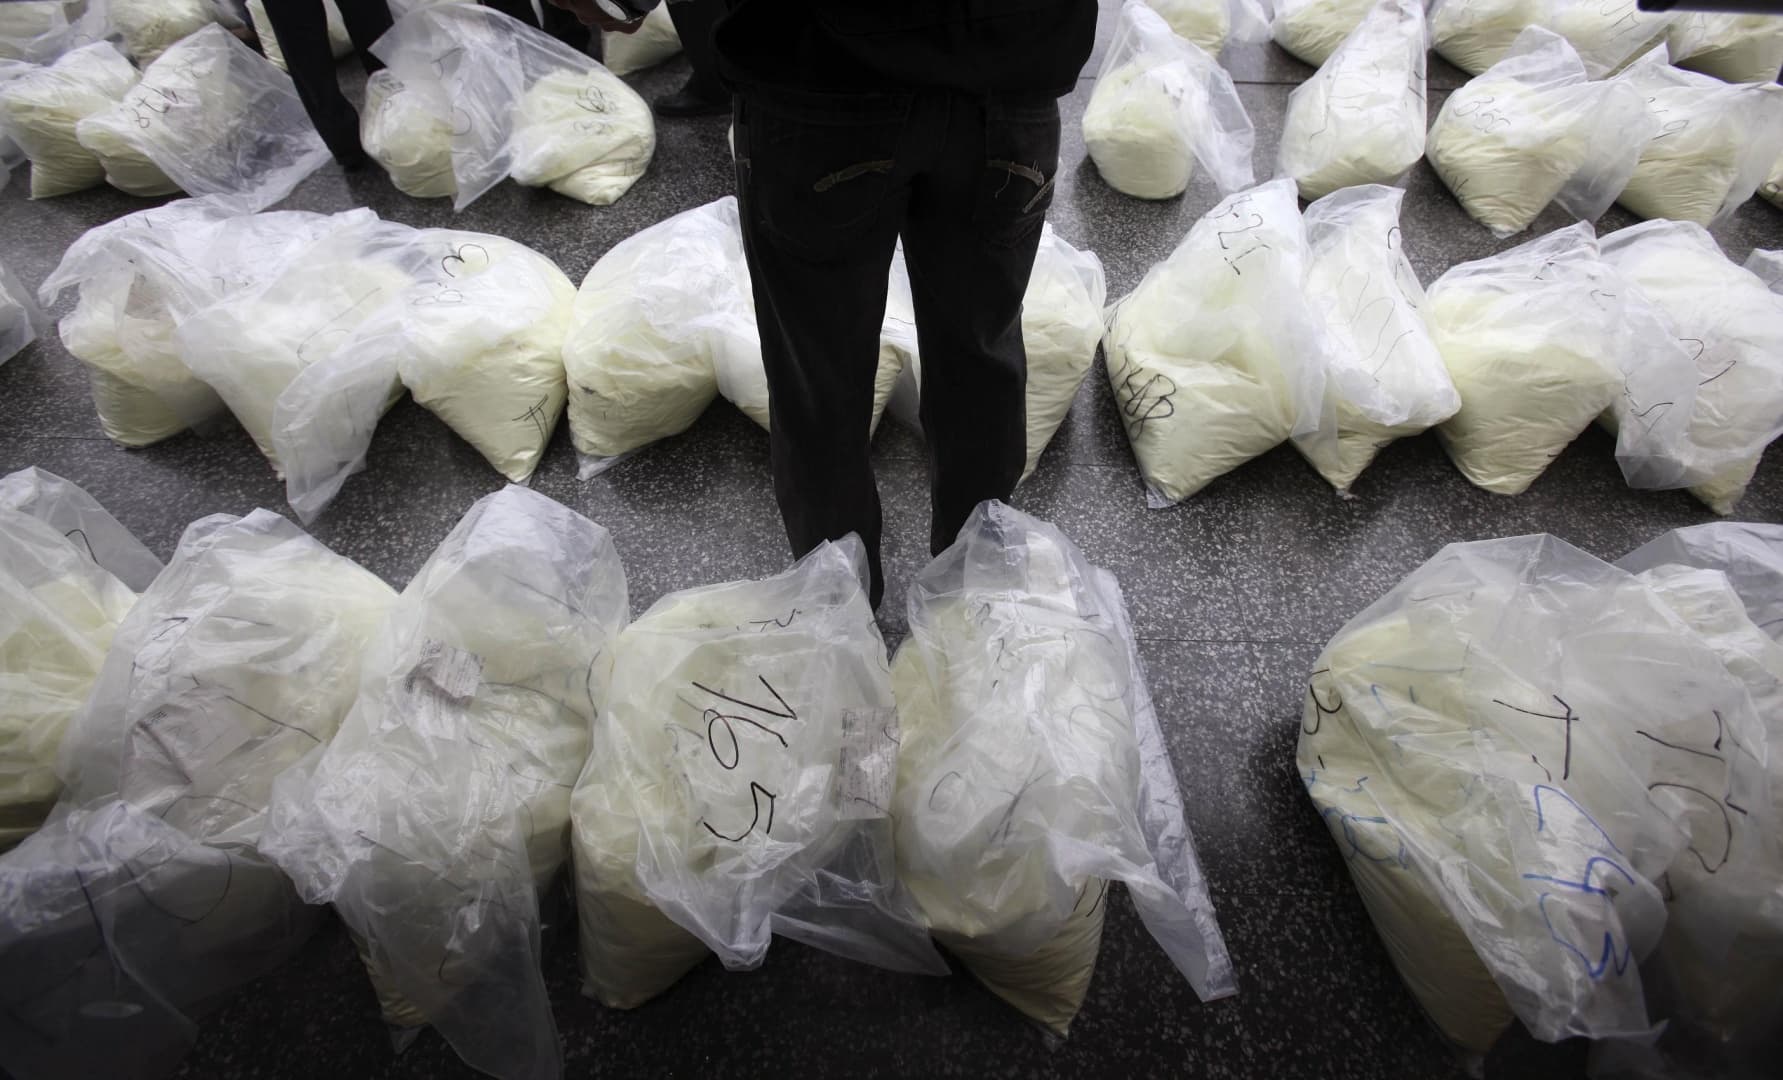 Rengeteg rendőr, bíró, törvényhozó részt vesz a drogkereskedelemben